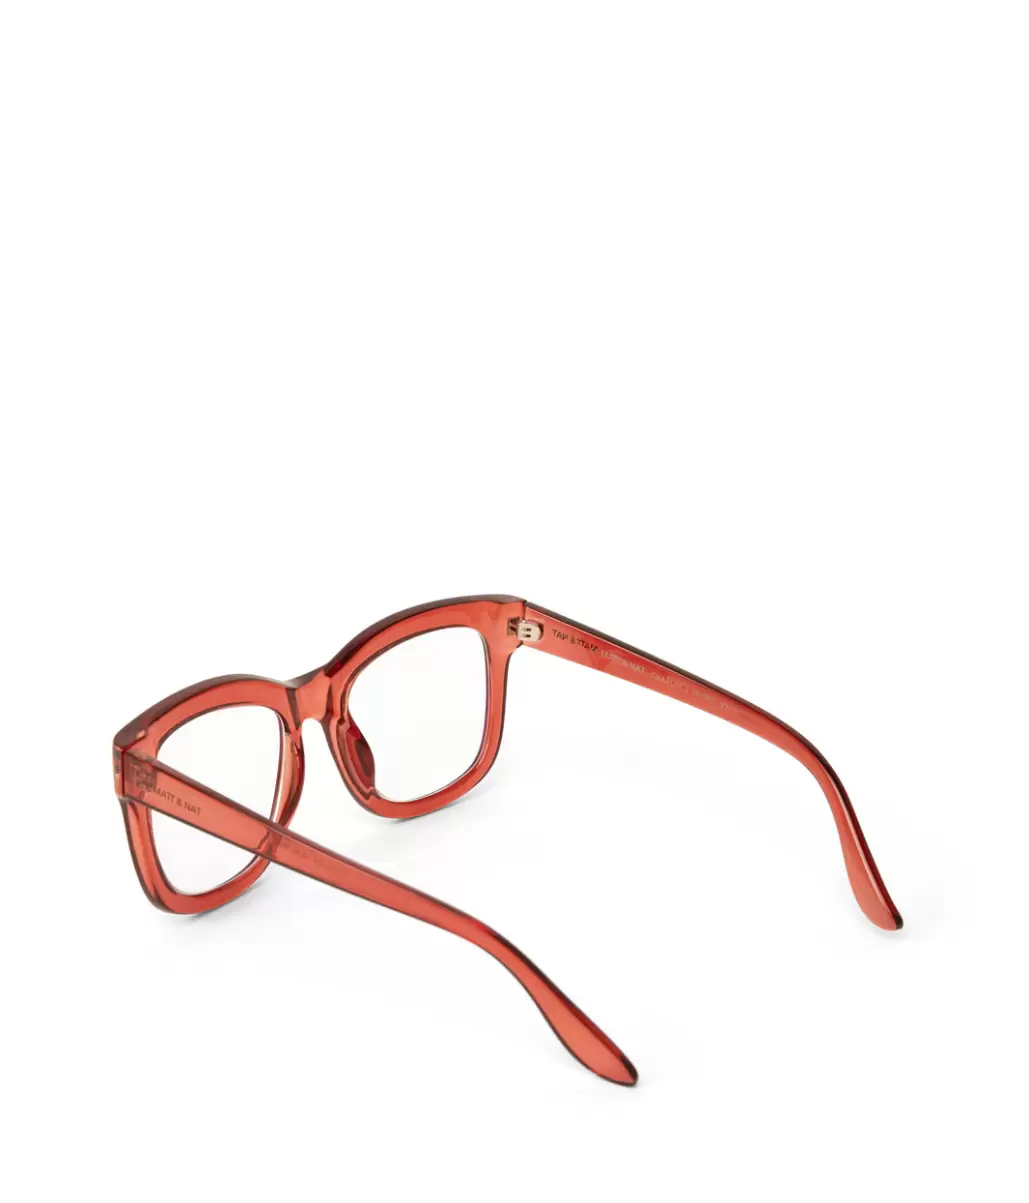 Women Optical Glasses Brown Charlet-3 Recycled Wayfarer Reading Glasses Buy Matt & Nat - 4